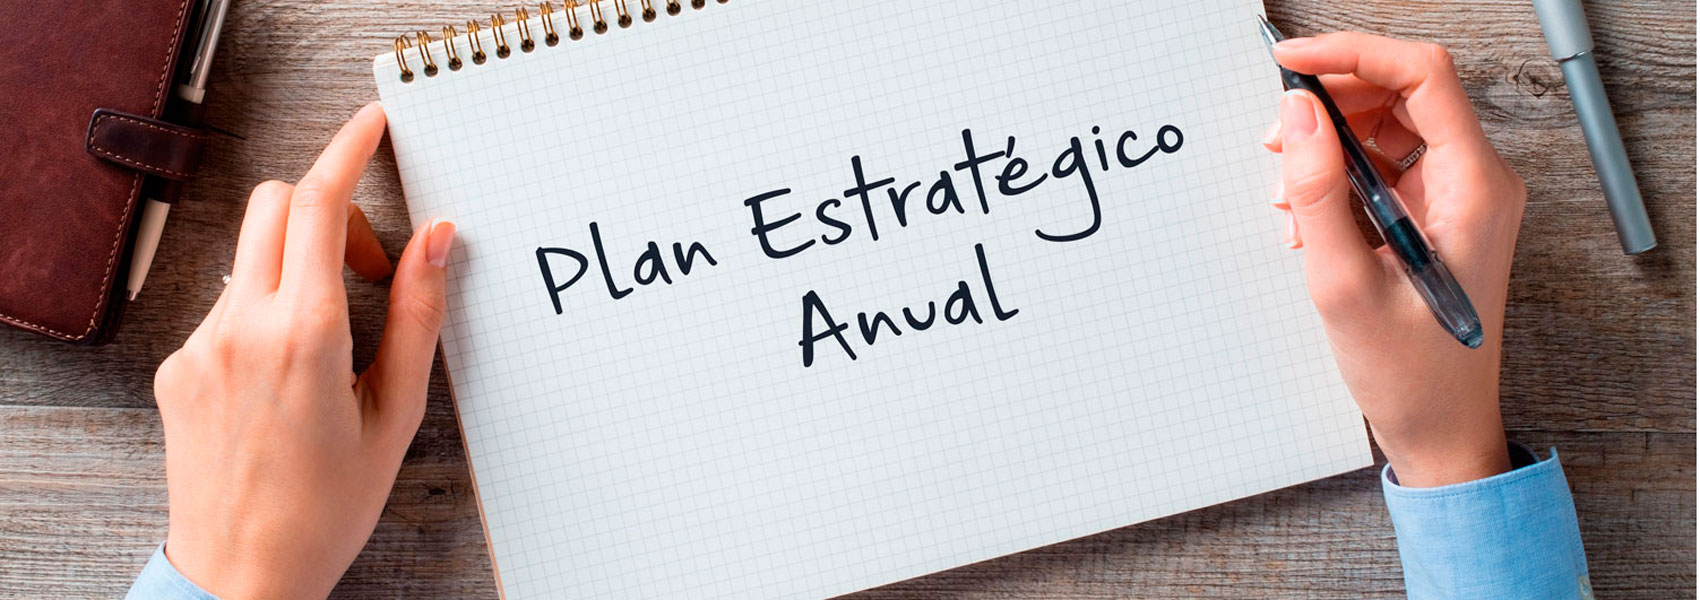 Plan Estratégico